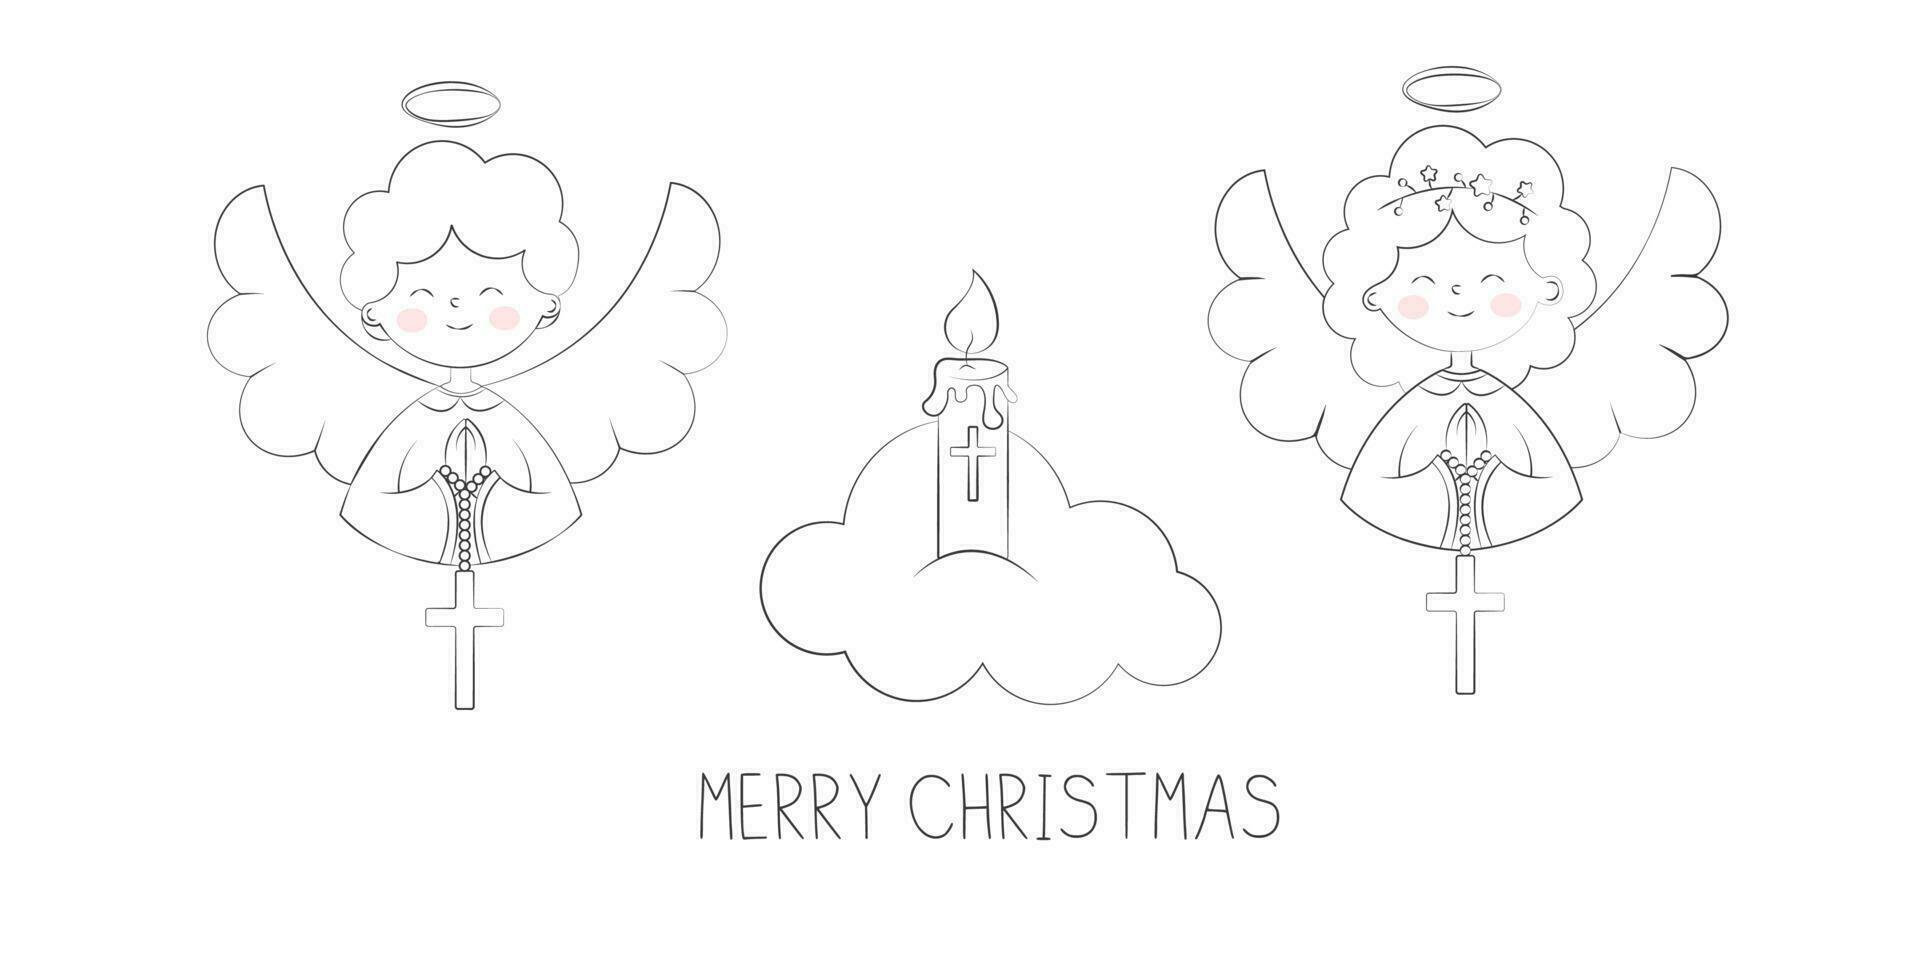 söt jul änglar pojke och flicka bön- på moln glad jul hälsning vektor illustration i klotter stil